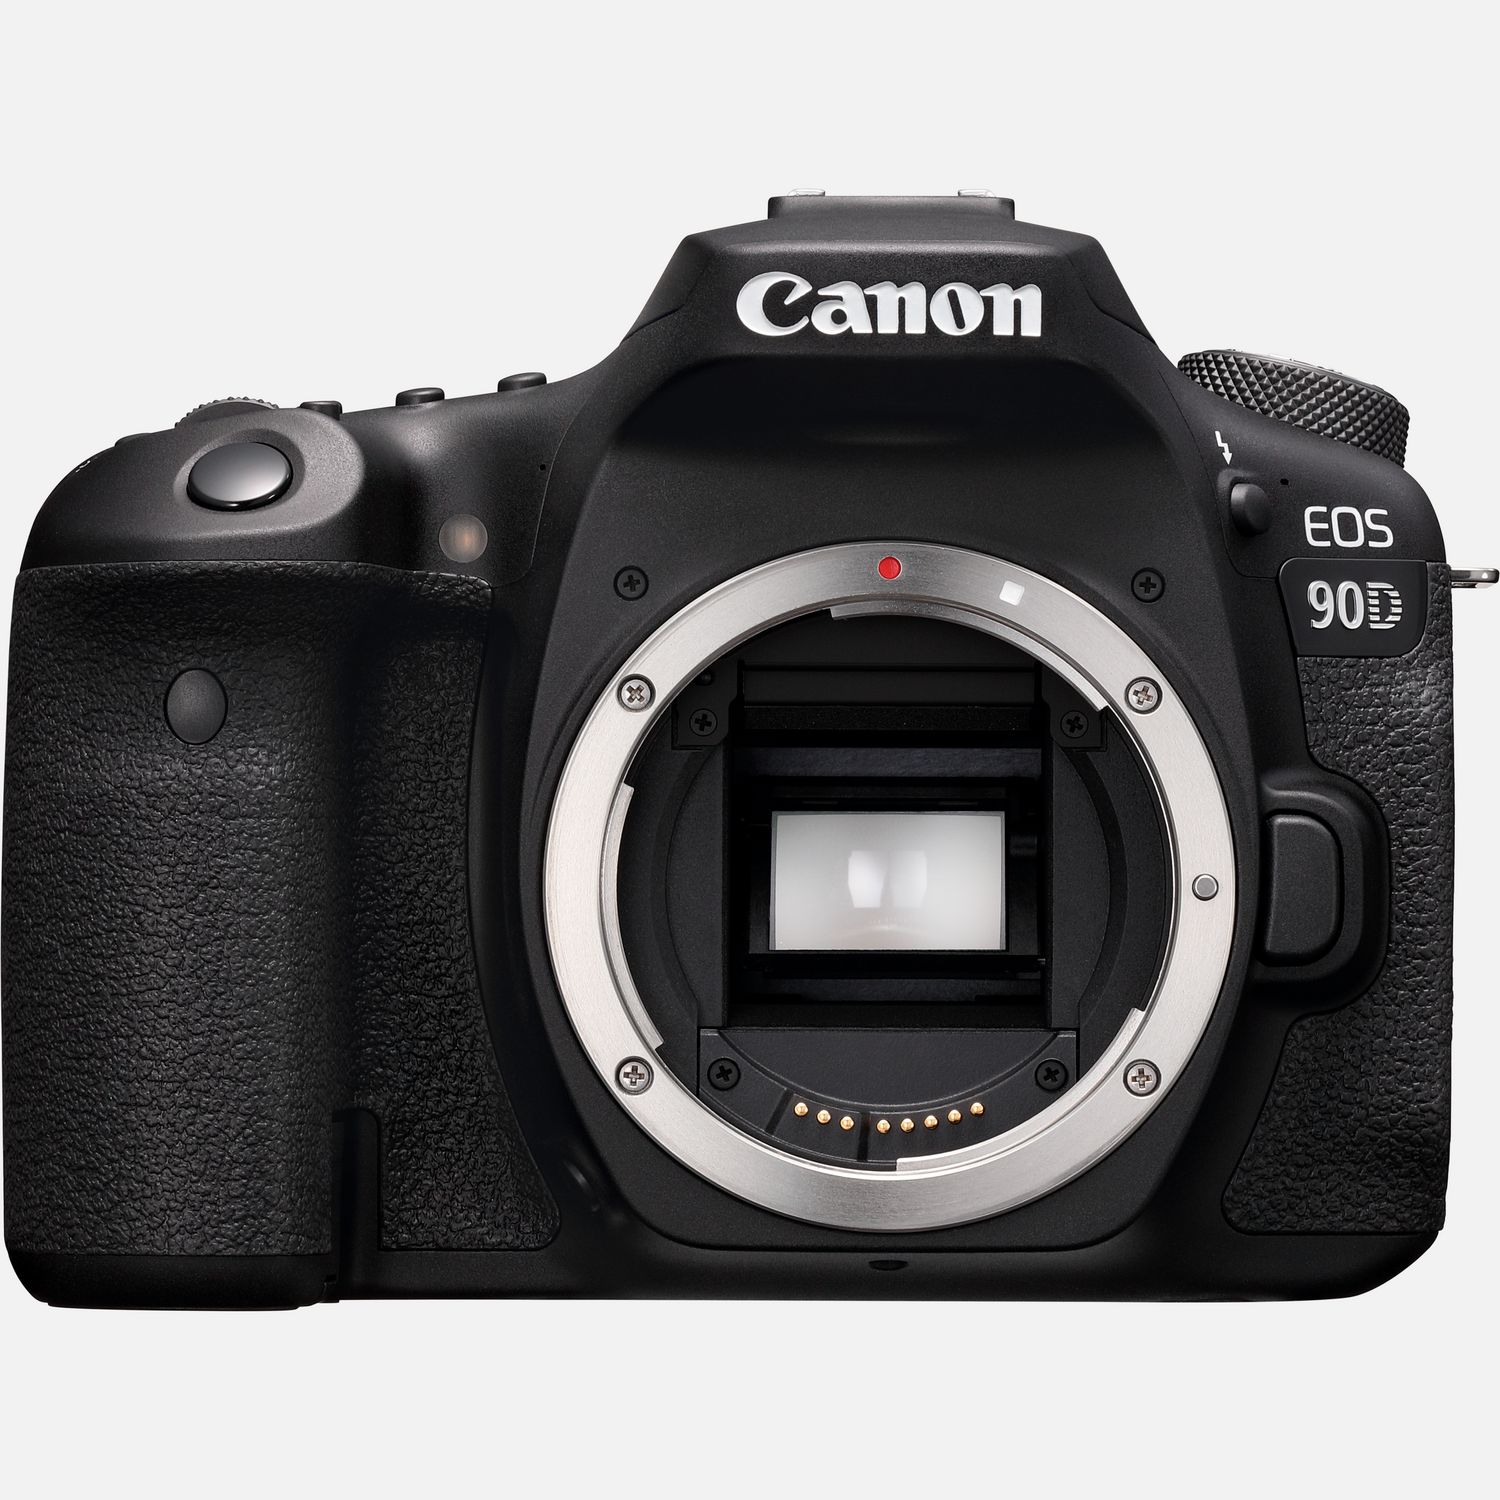 Are Canon digital cameras good?